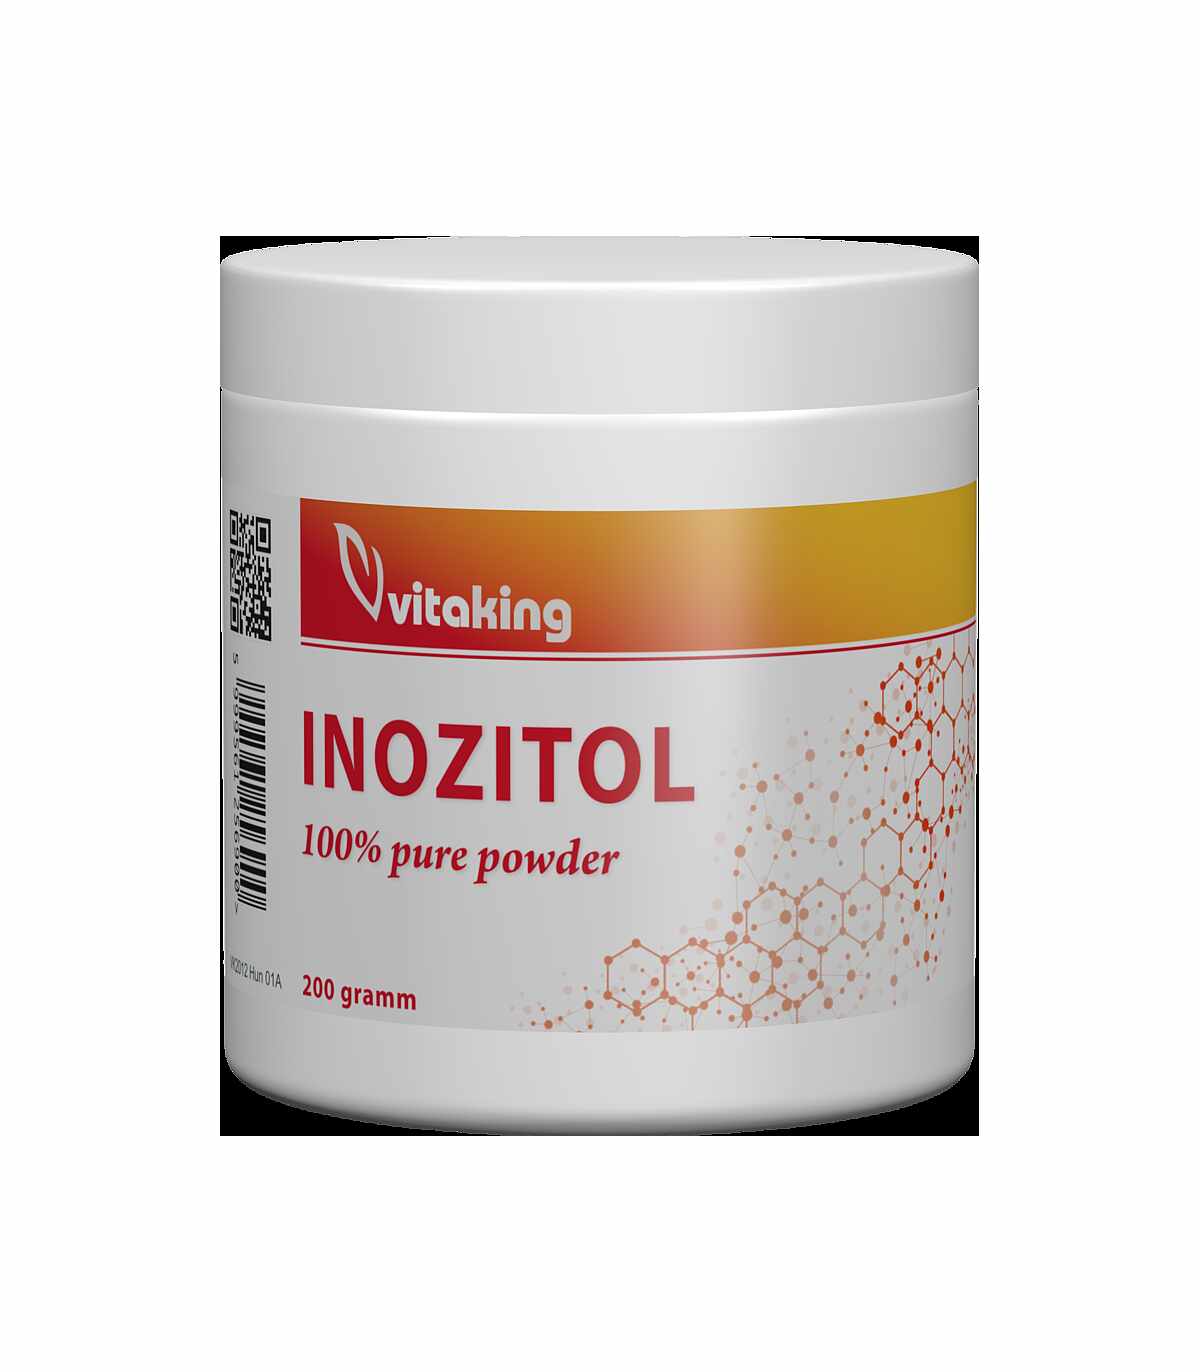 Myo Inozitol 100%, 200g - Vitaking